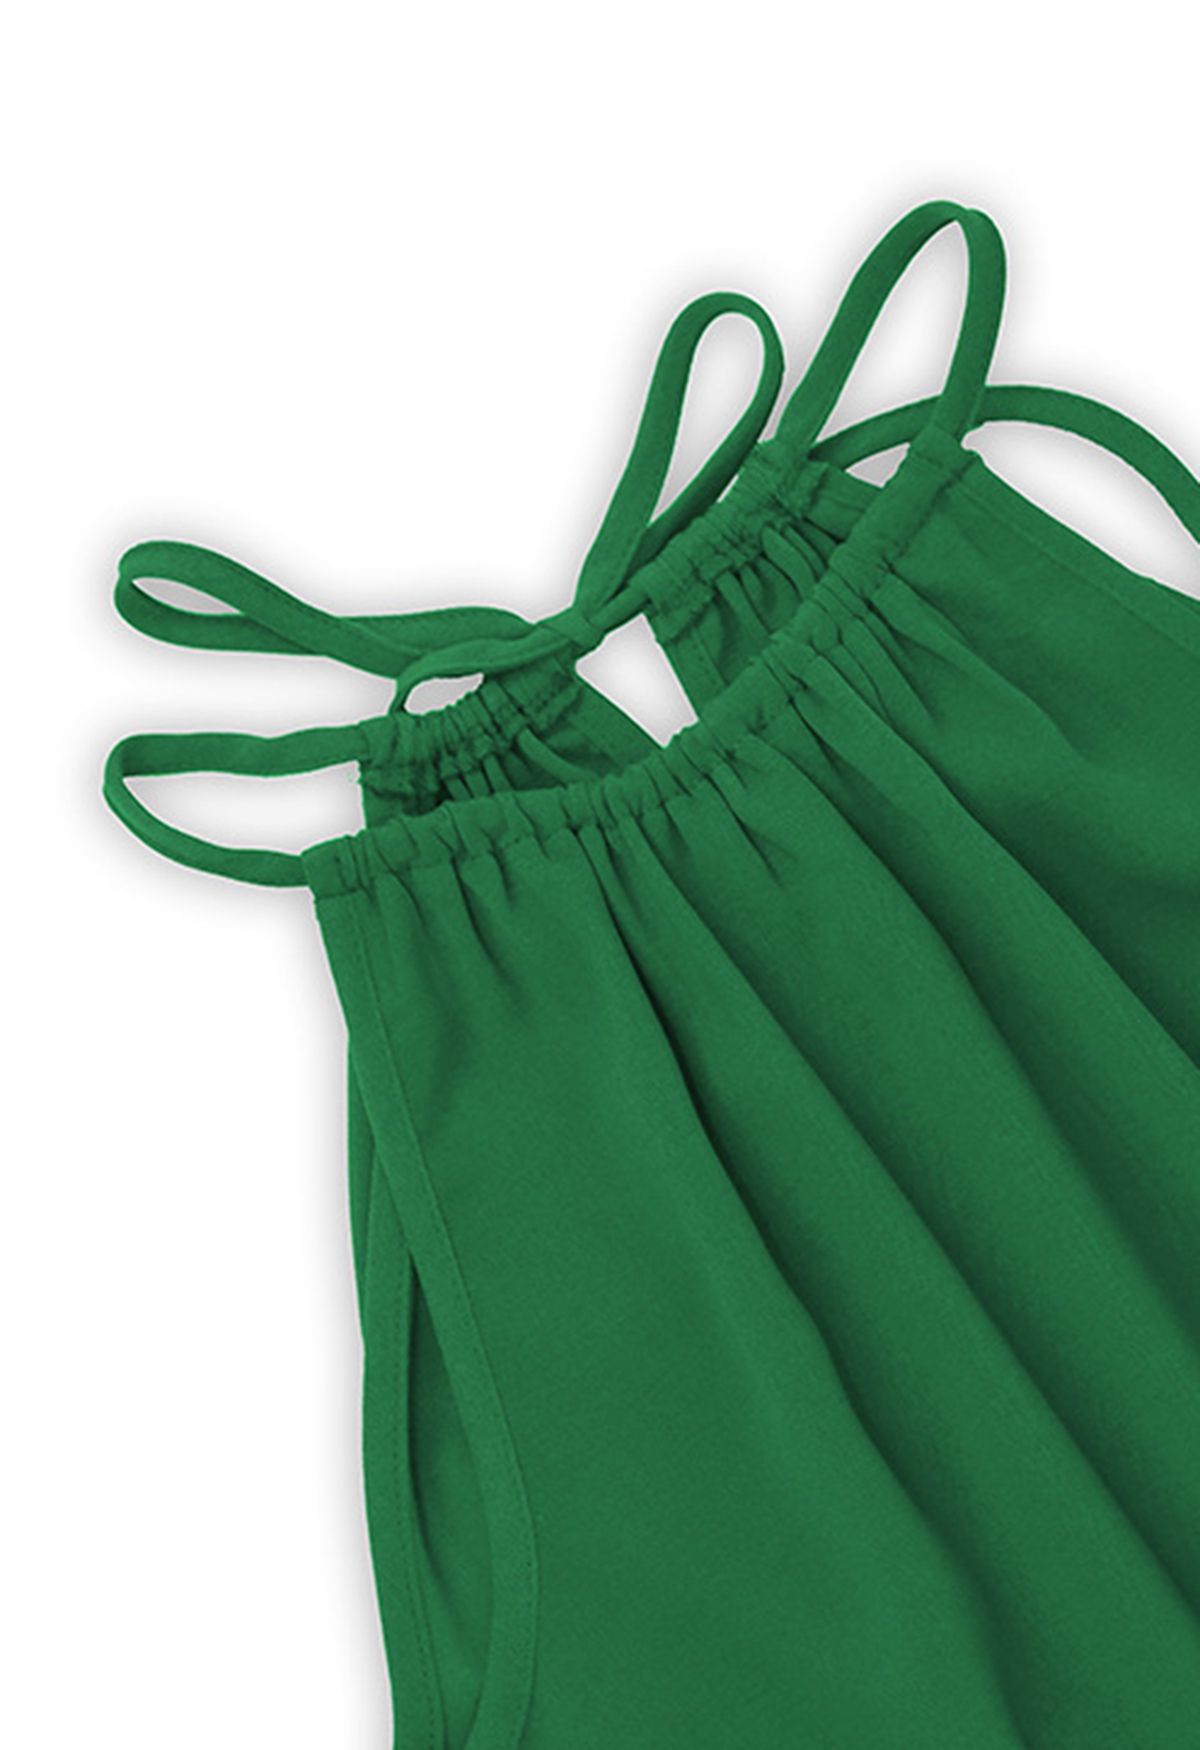 فستان باللون الأخضر